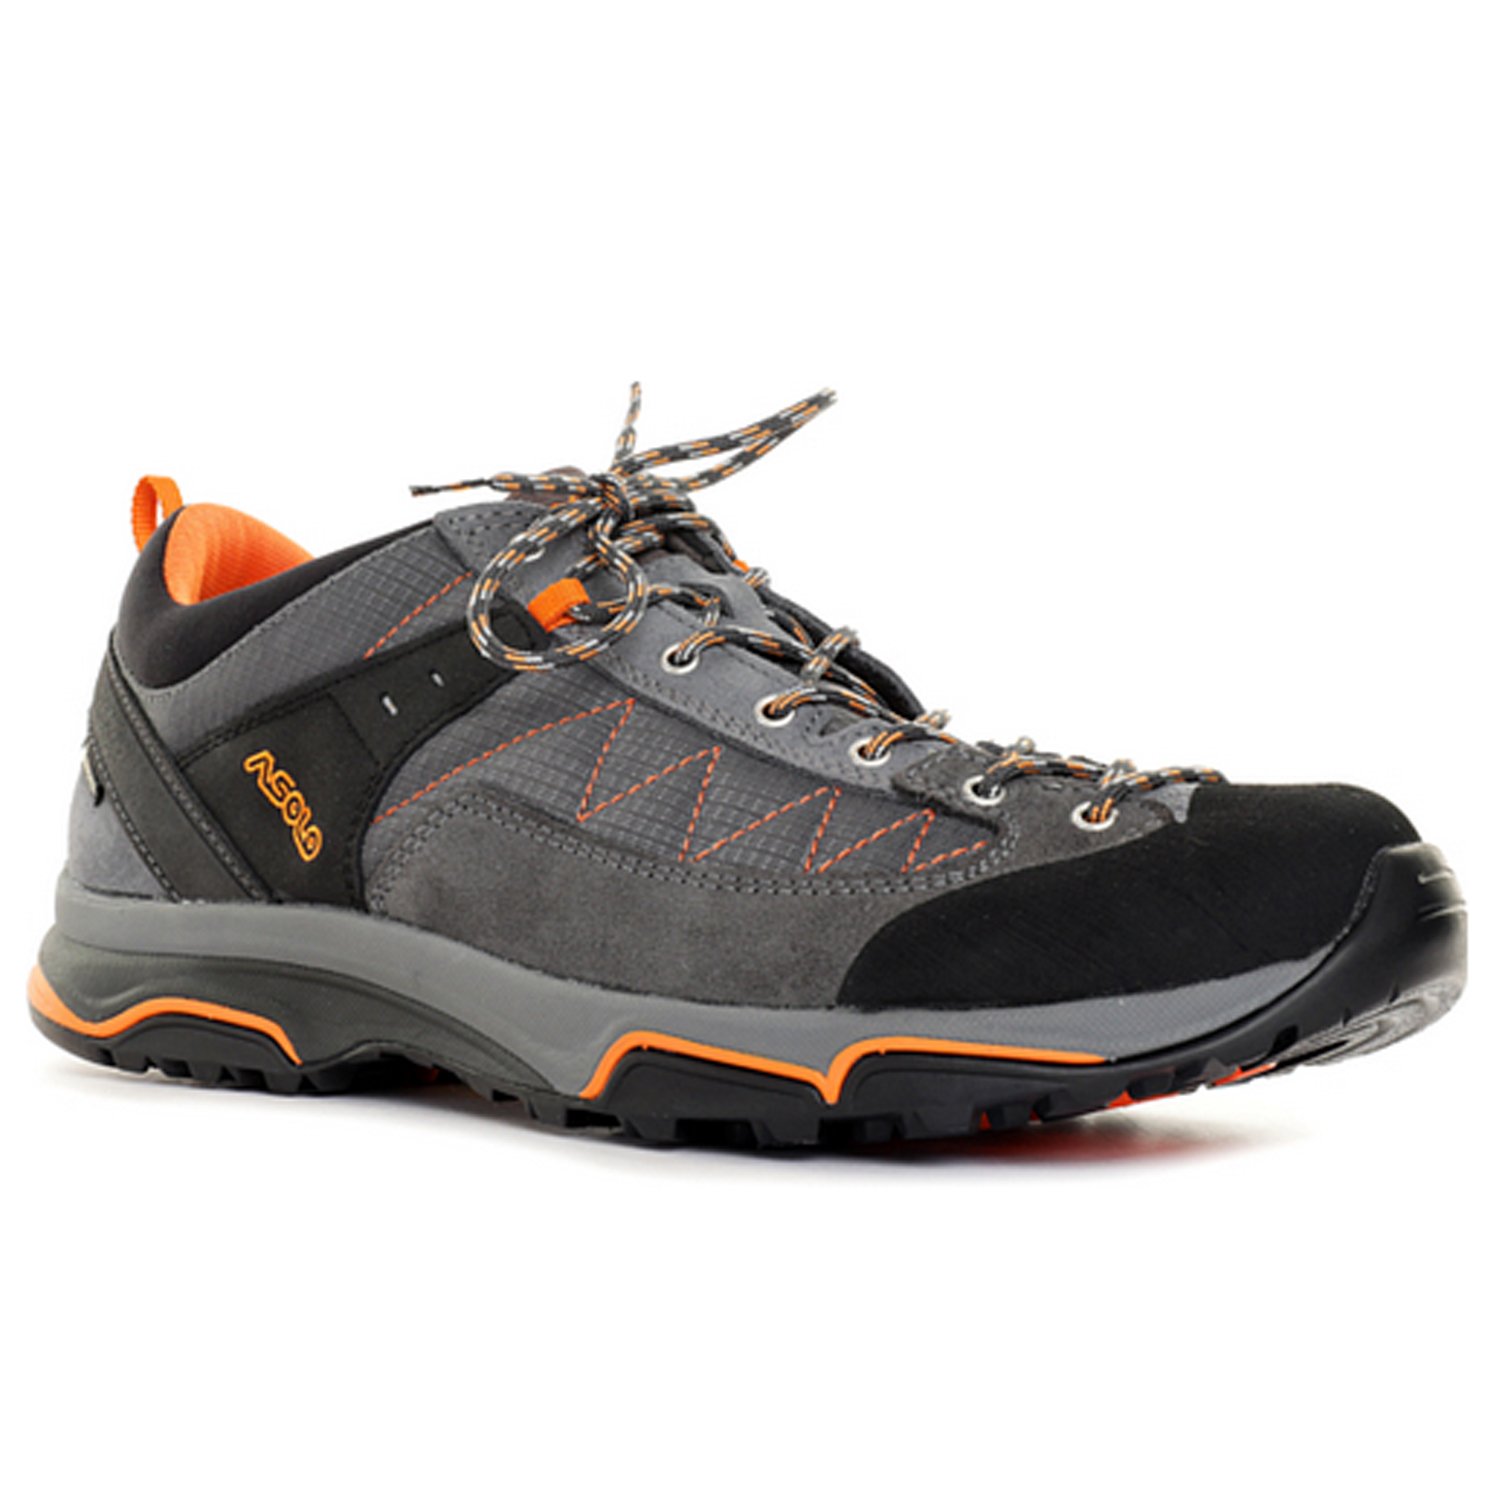 Ботинки Asolo Hiking Pipe GV Graphite/Graphite, мужской, серый, 2020-21, A40032_A189 ботинки asolo hiking pipe gv graphite graphite мужской серый 2020 21 a40032 a189